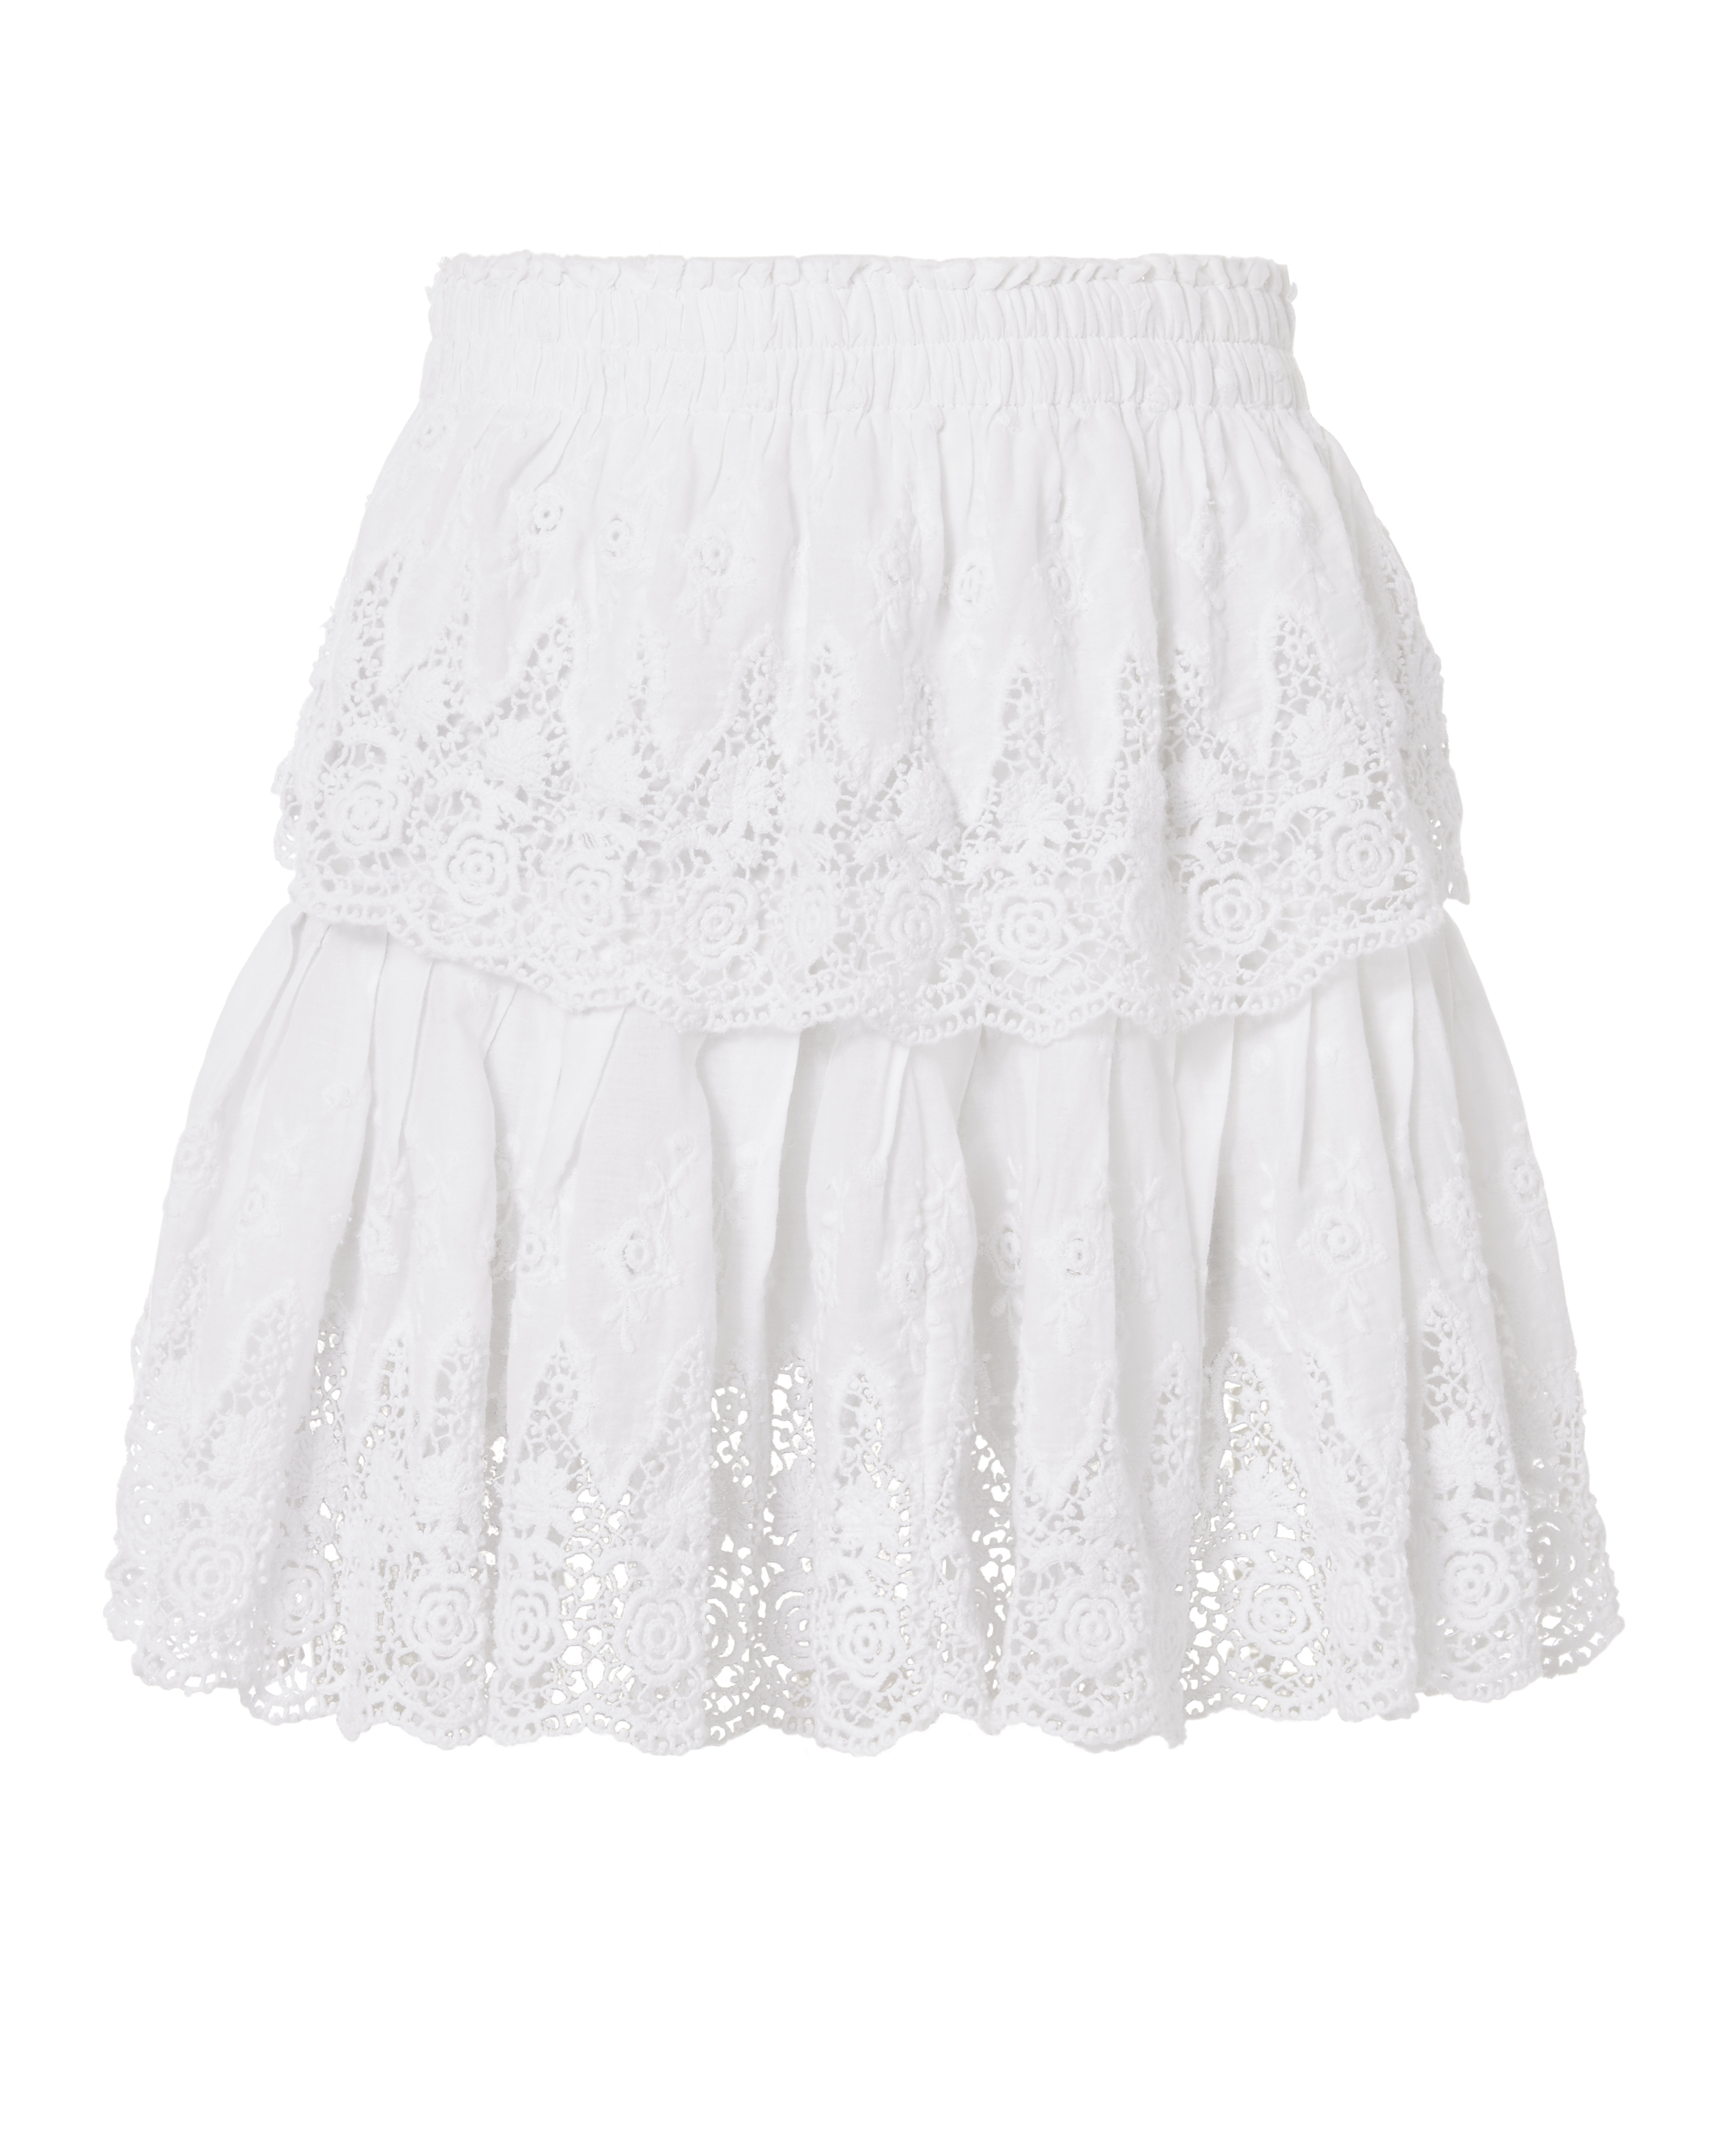 Ruffled White Mini Skirt